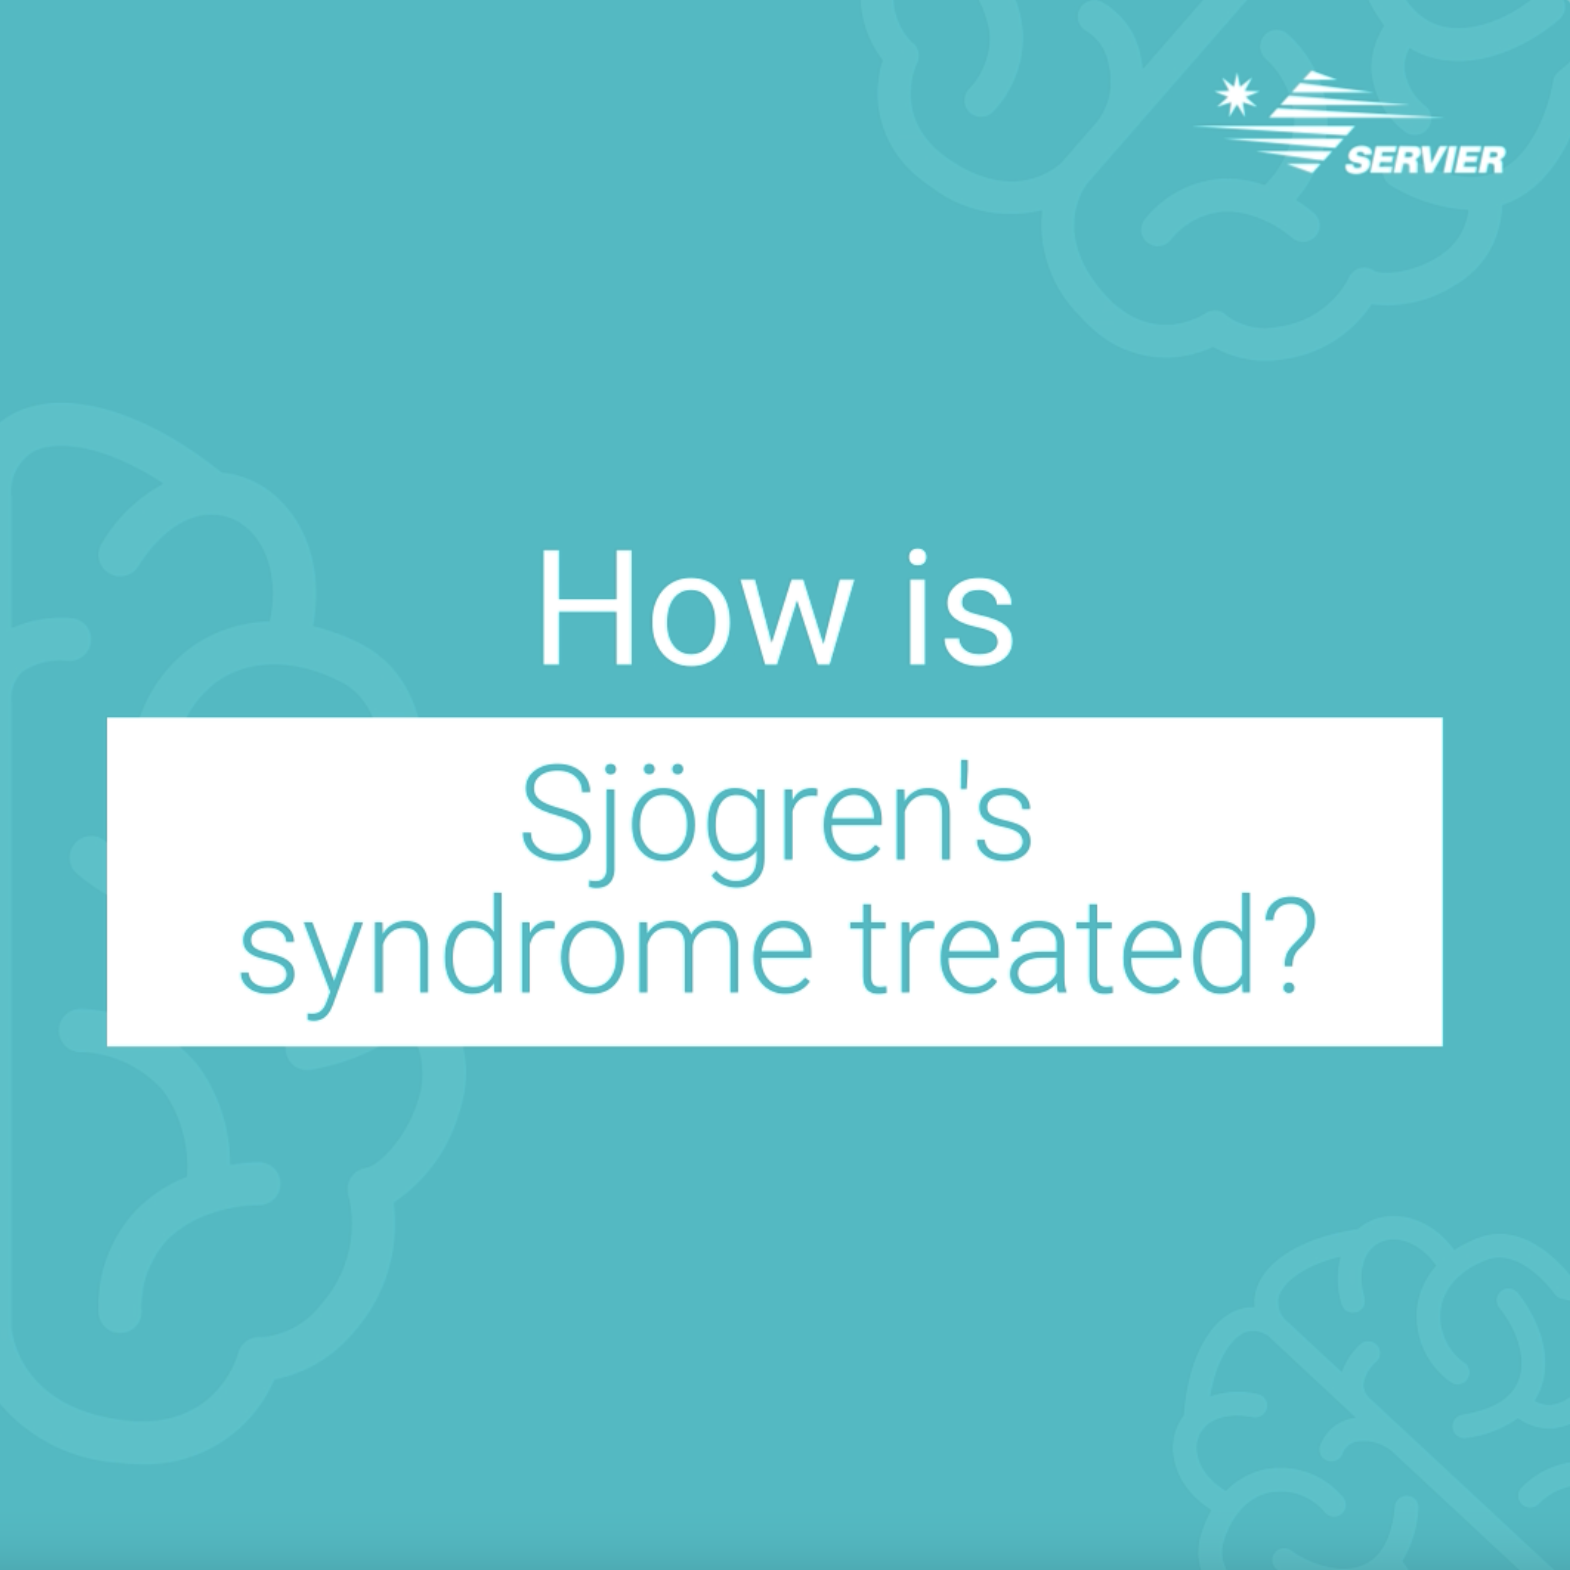 Couverture vidéo de sensibilisation du syndrome de Sjögren